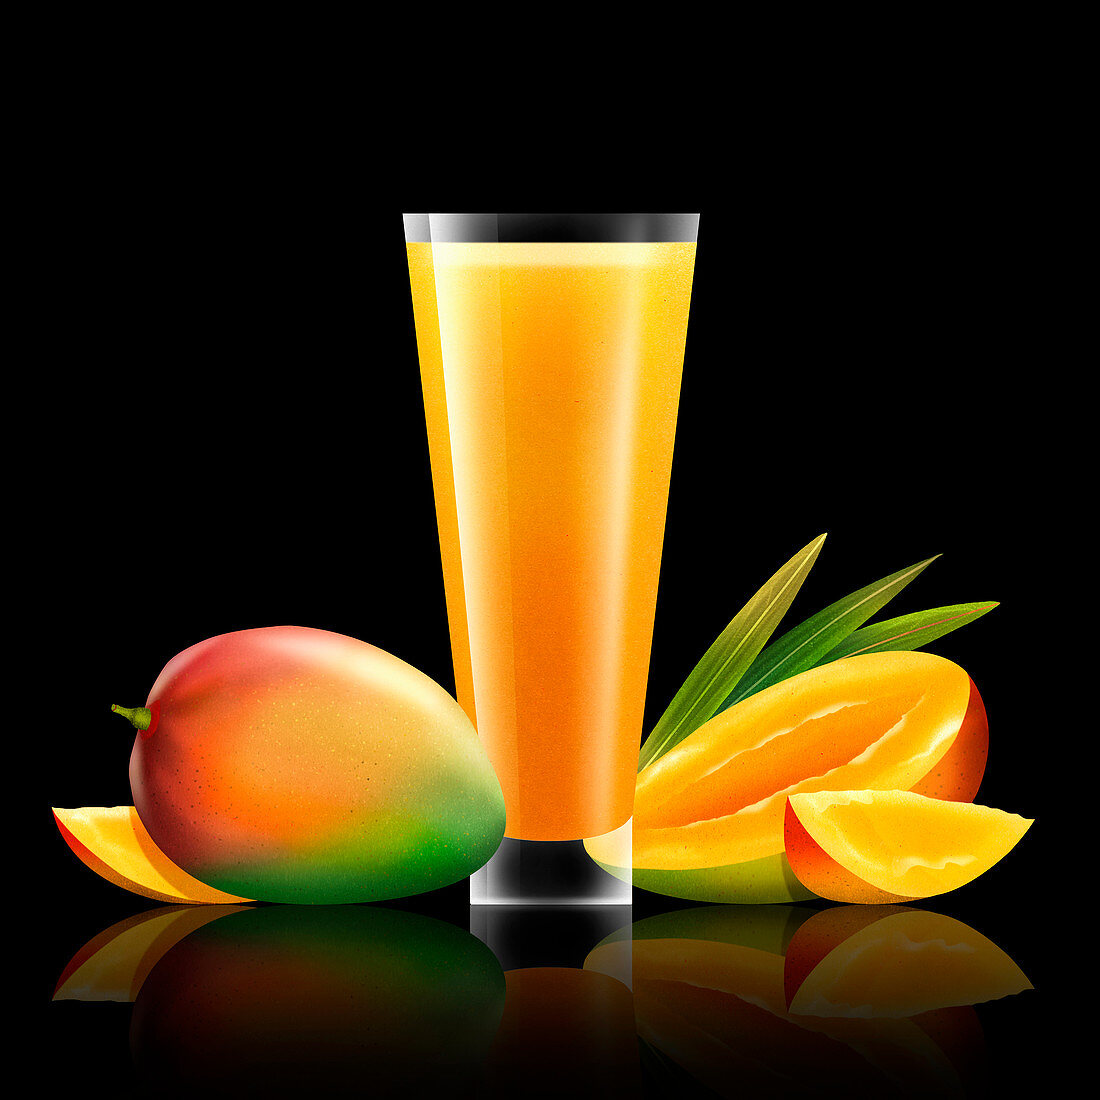 Fresh mango and glass of juice, illustration